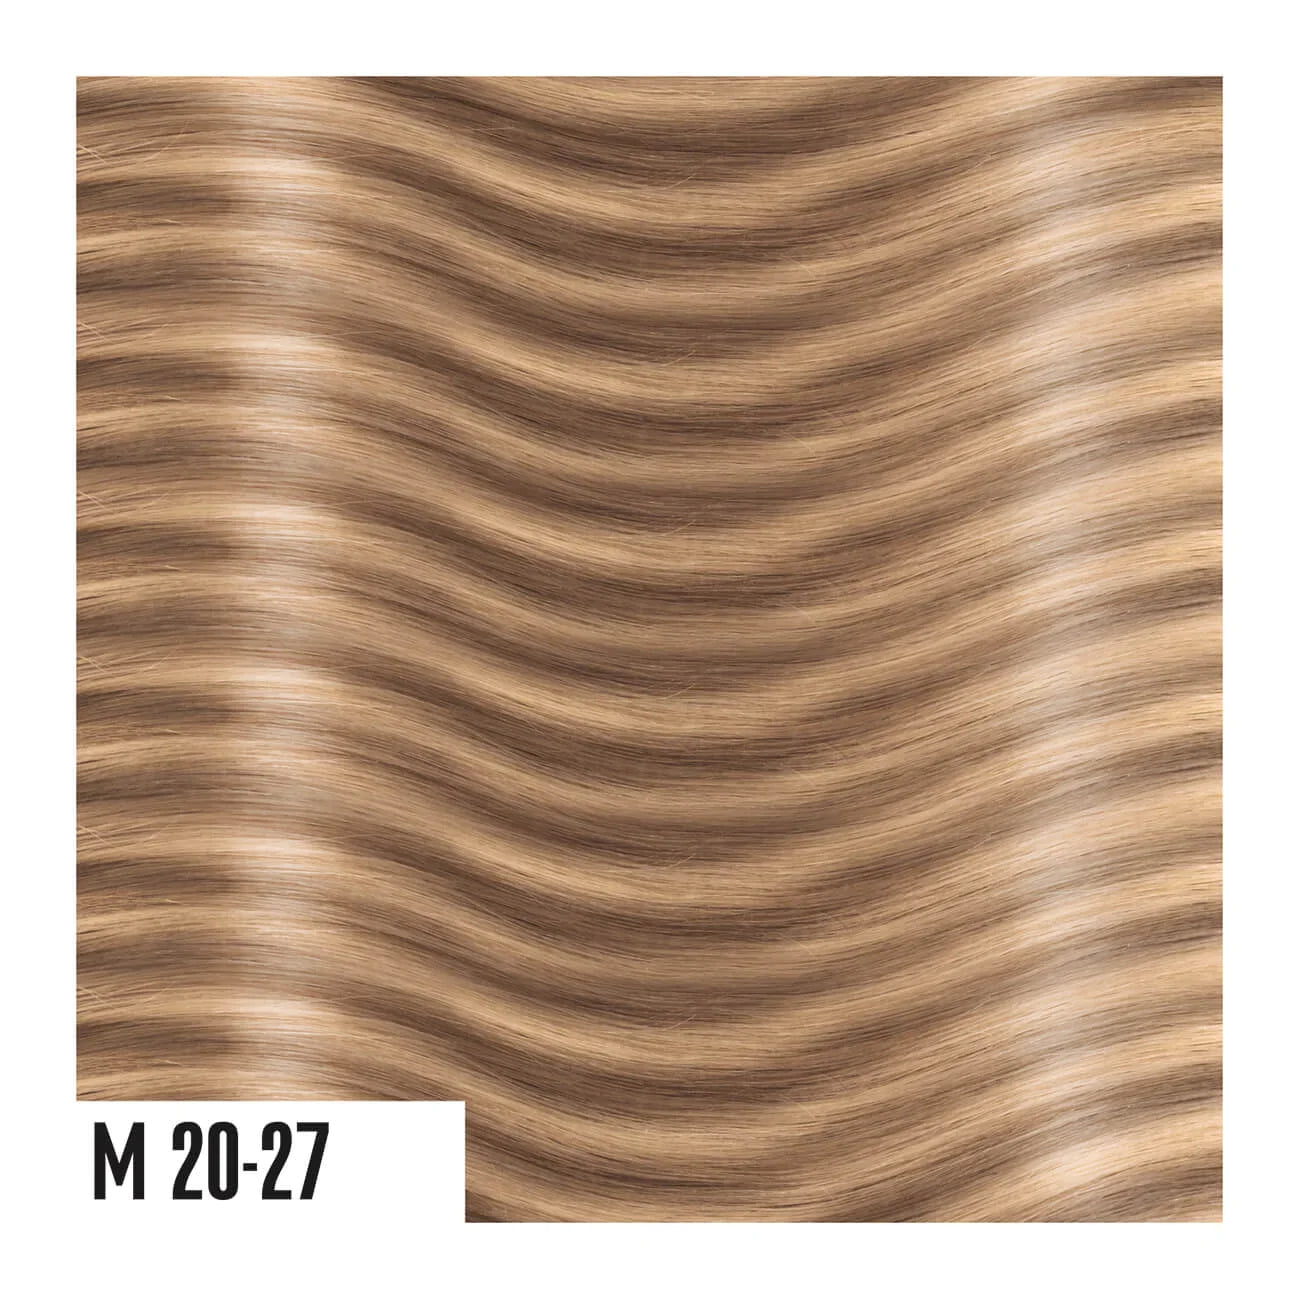 Hair Extension Capelli in microring - Capelli lisci (30cm/35cm)